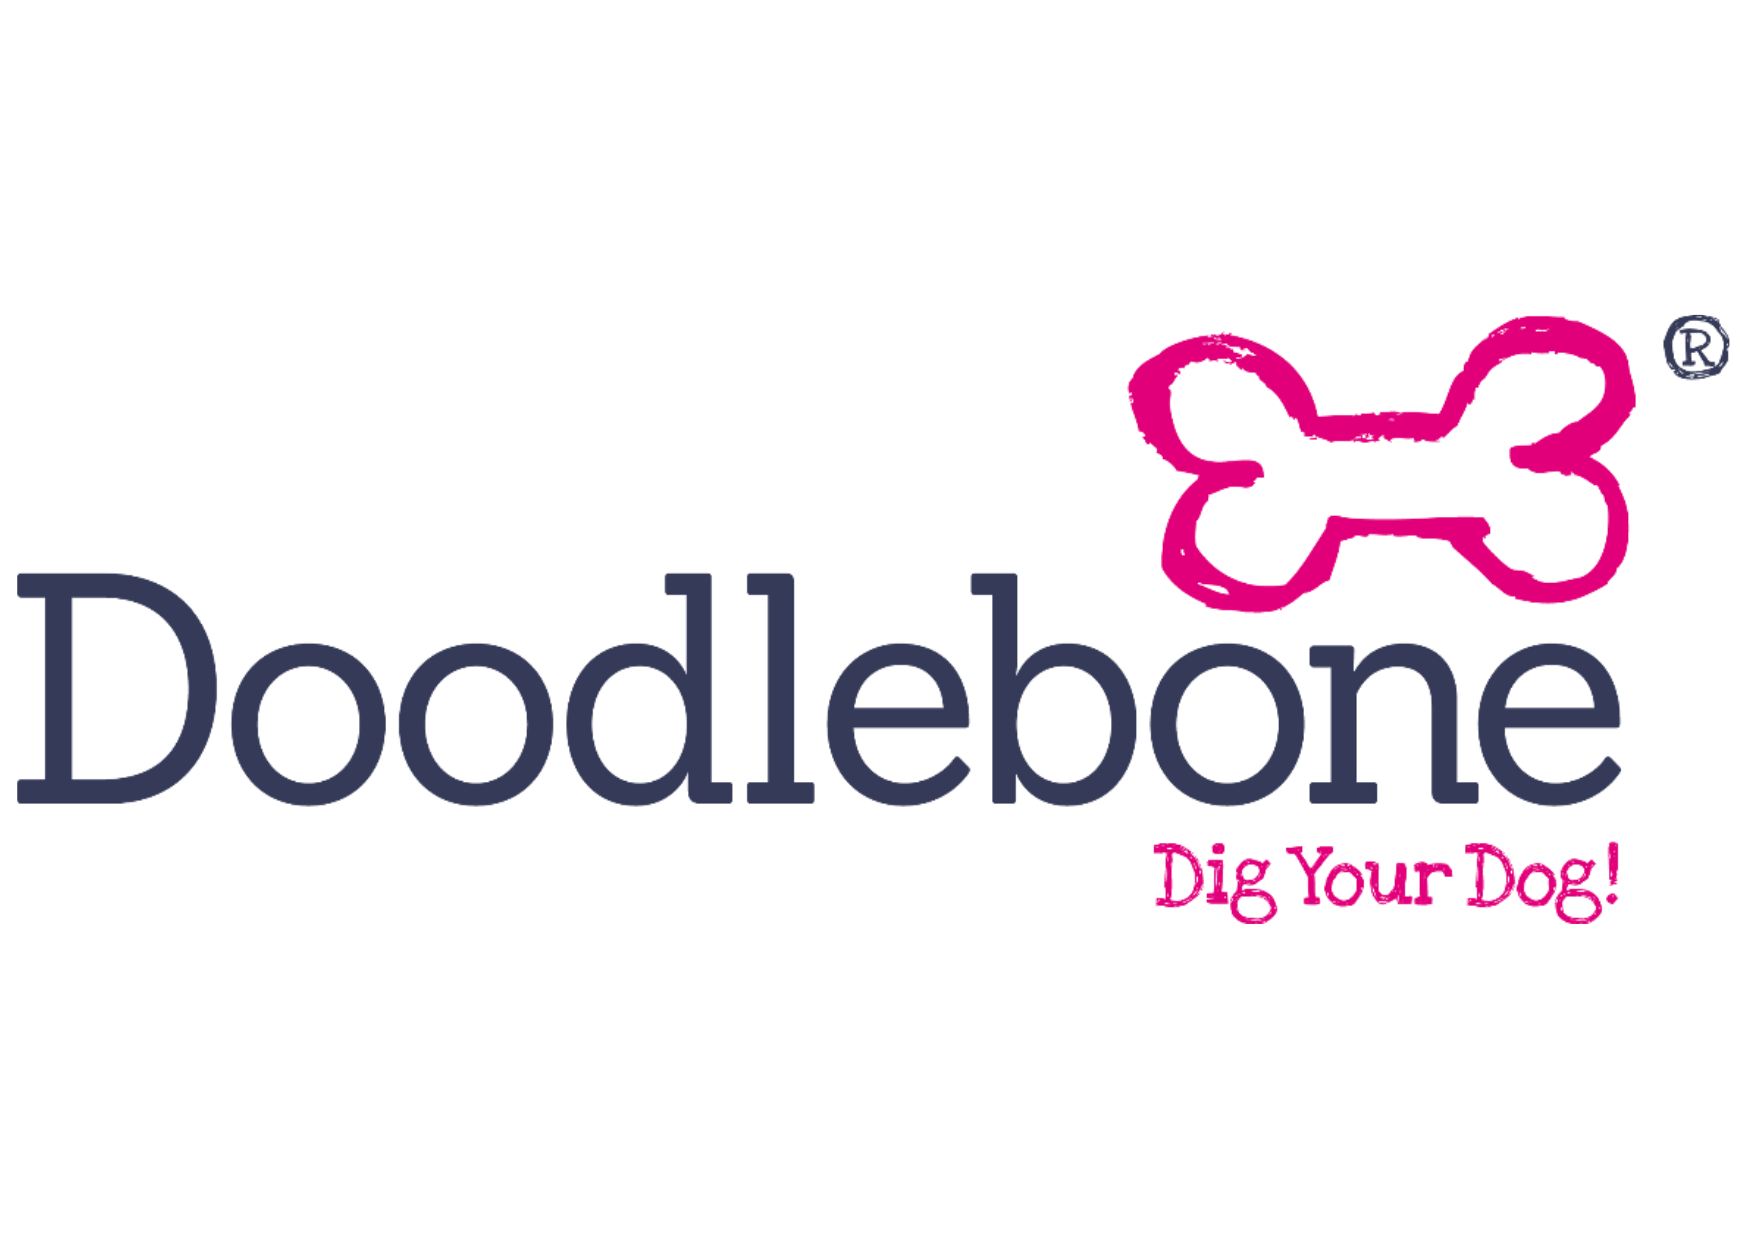 Supplier Profile: Doodlebone - Dig Your Dog!